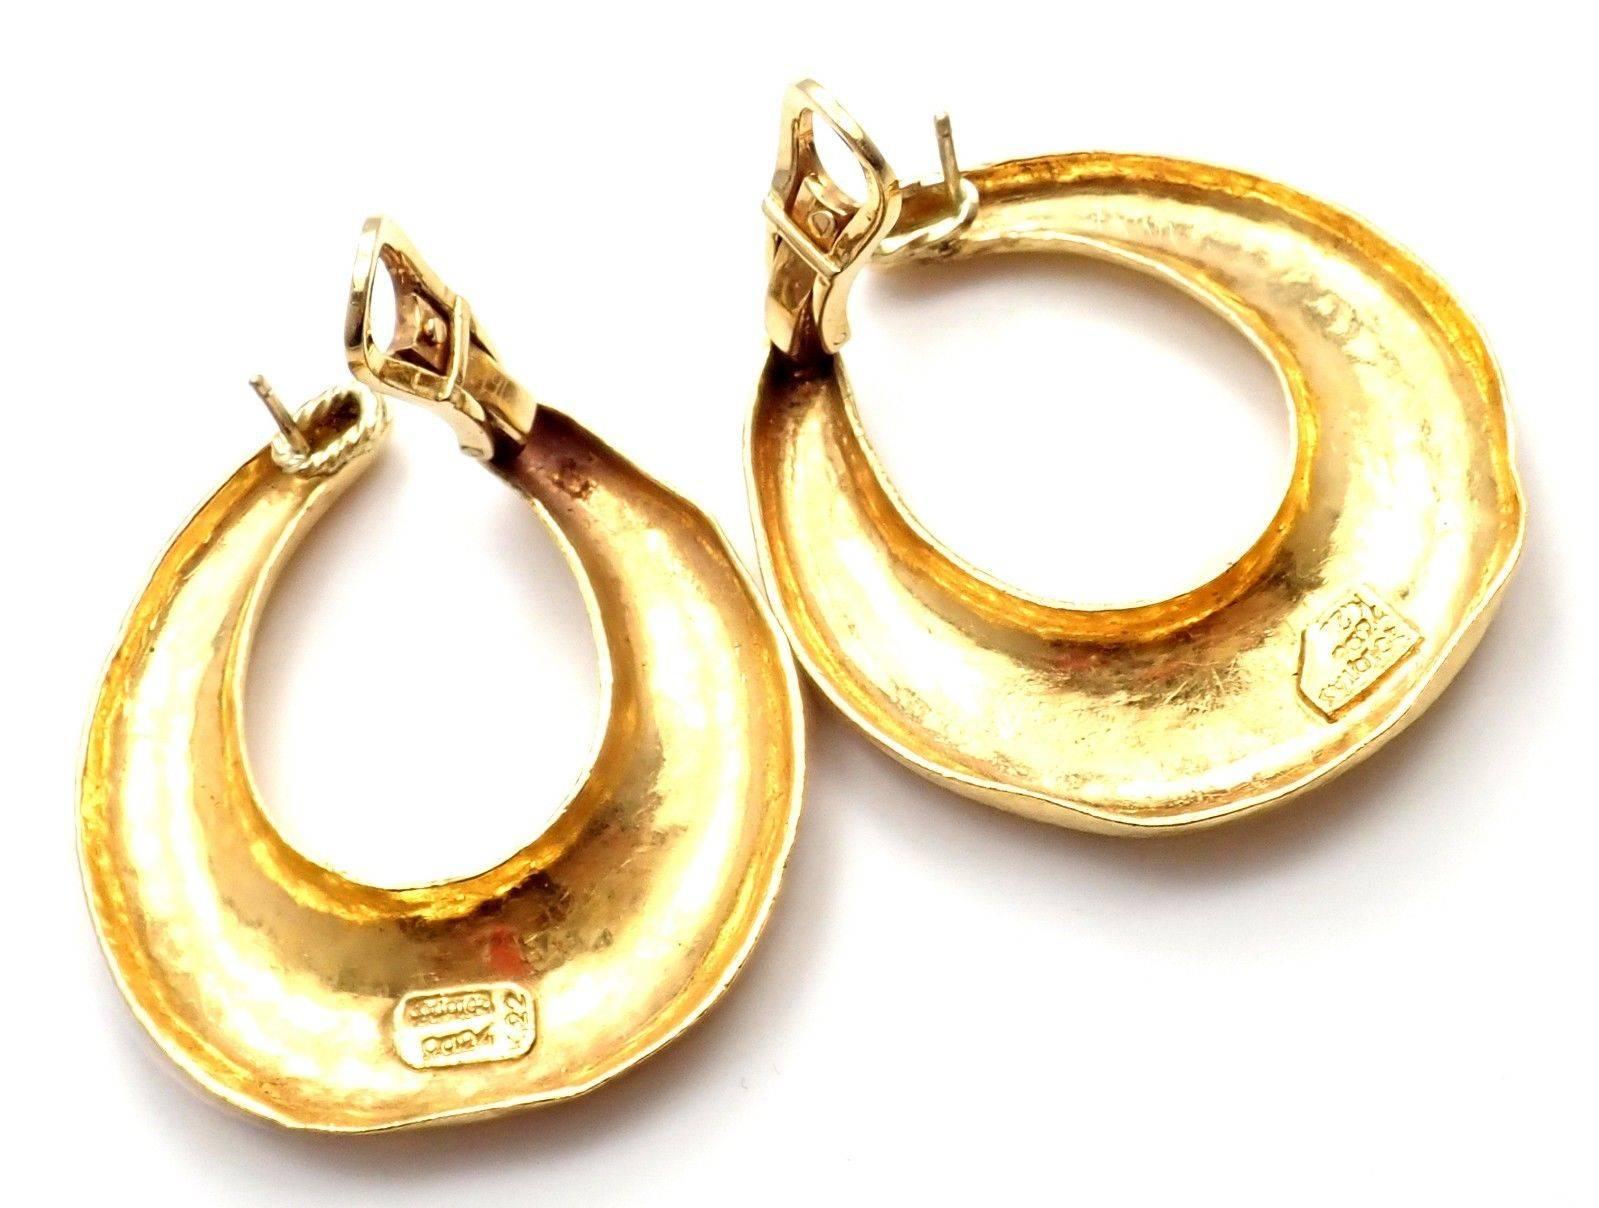 Zolotas Greece Large Yellow Gold Hoop Earrings 3